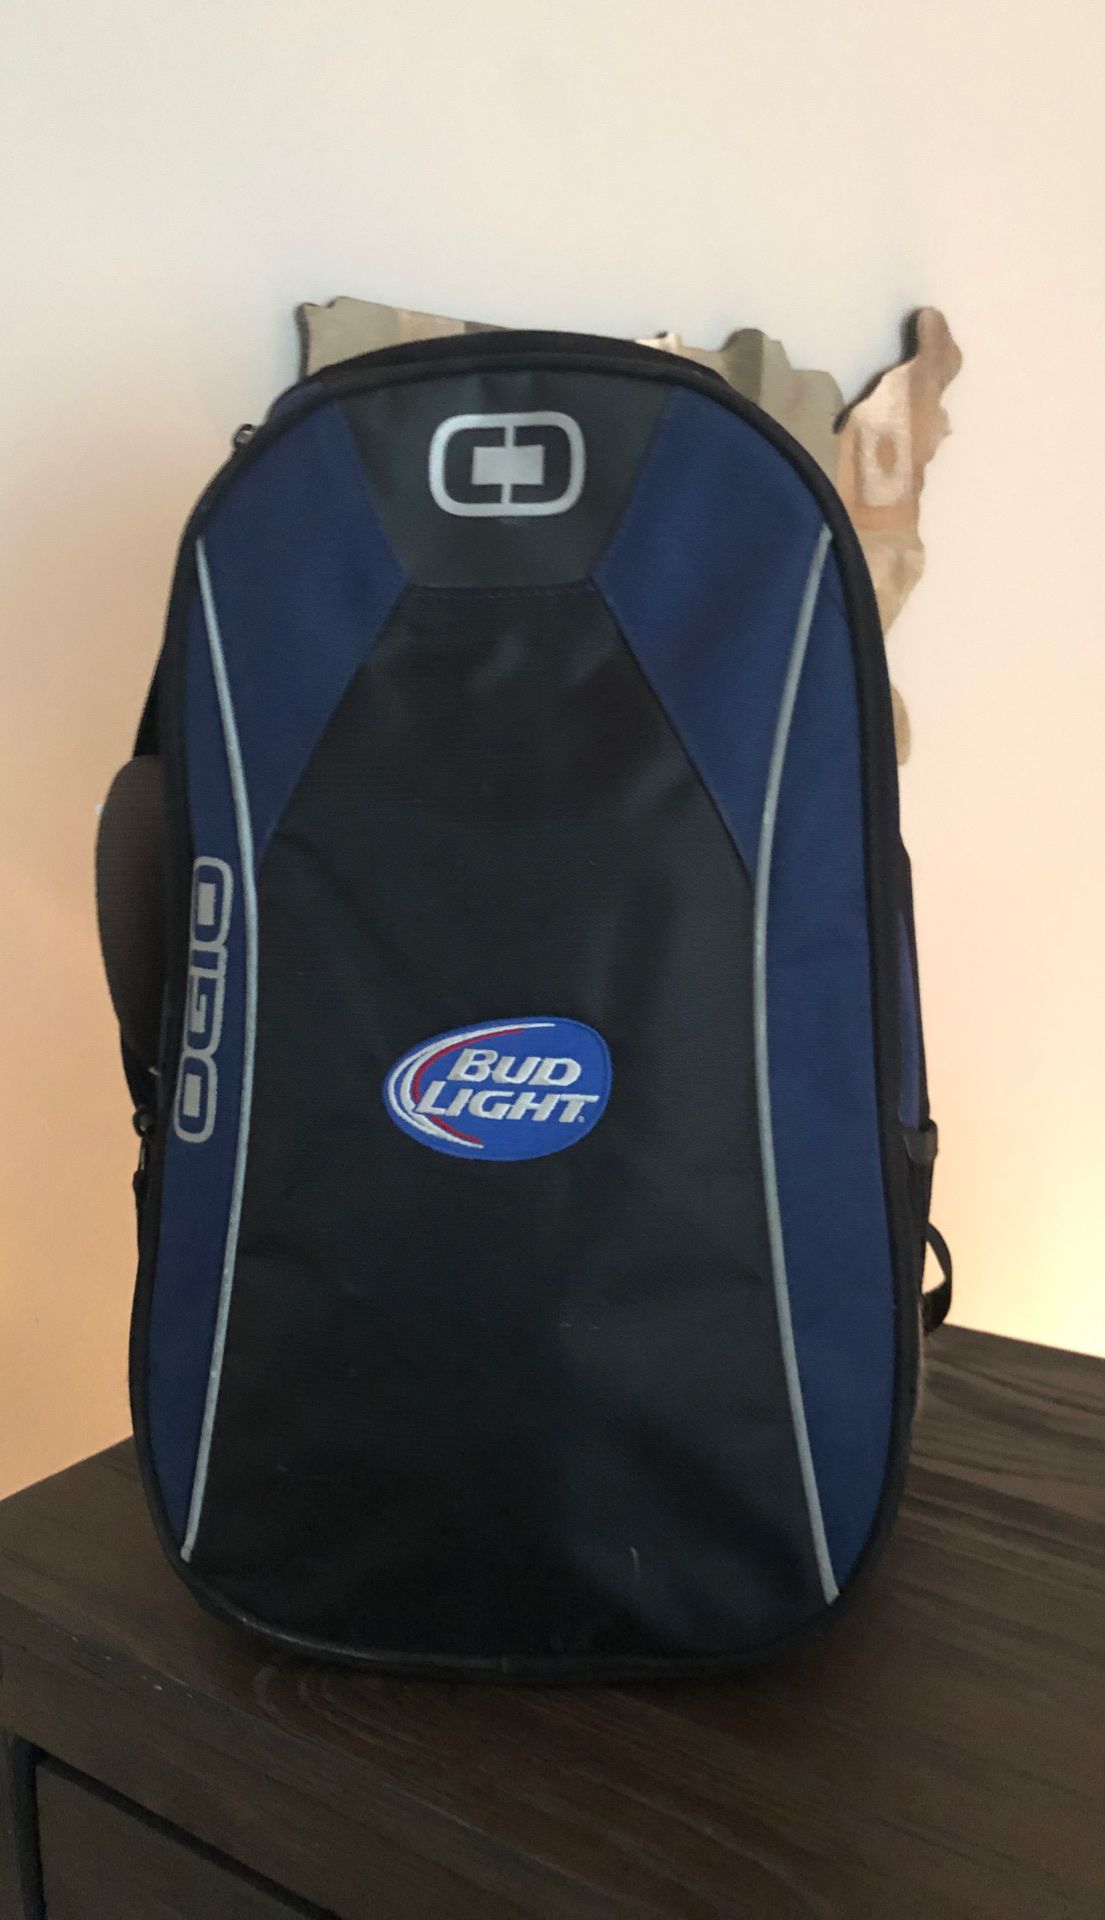 Bud light backpack